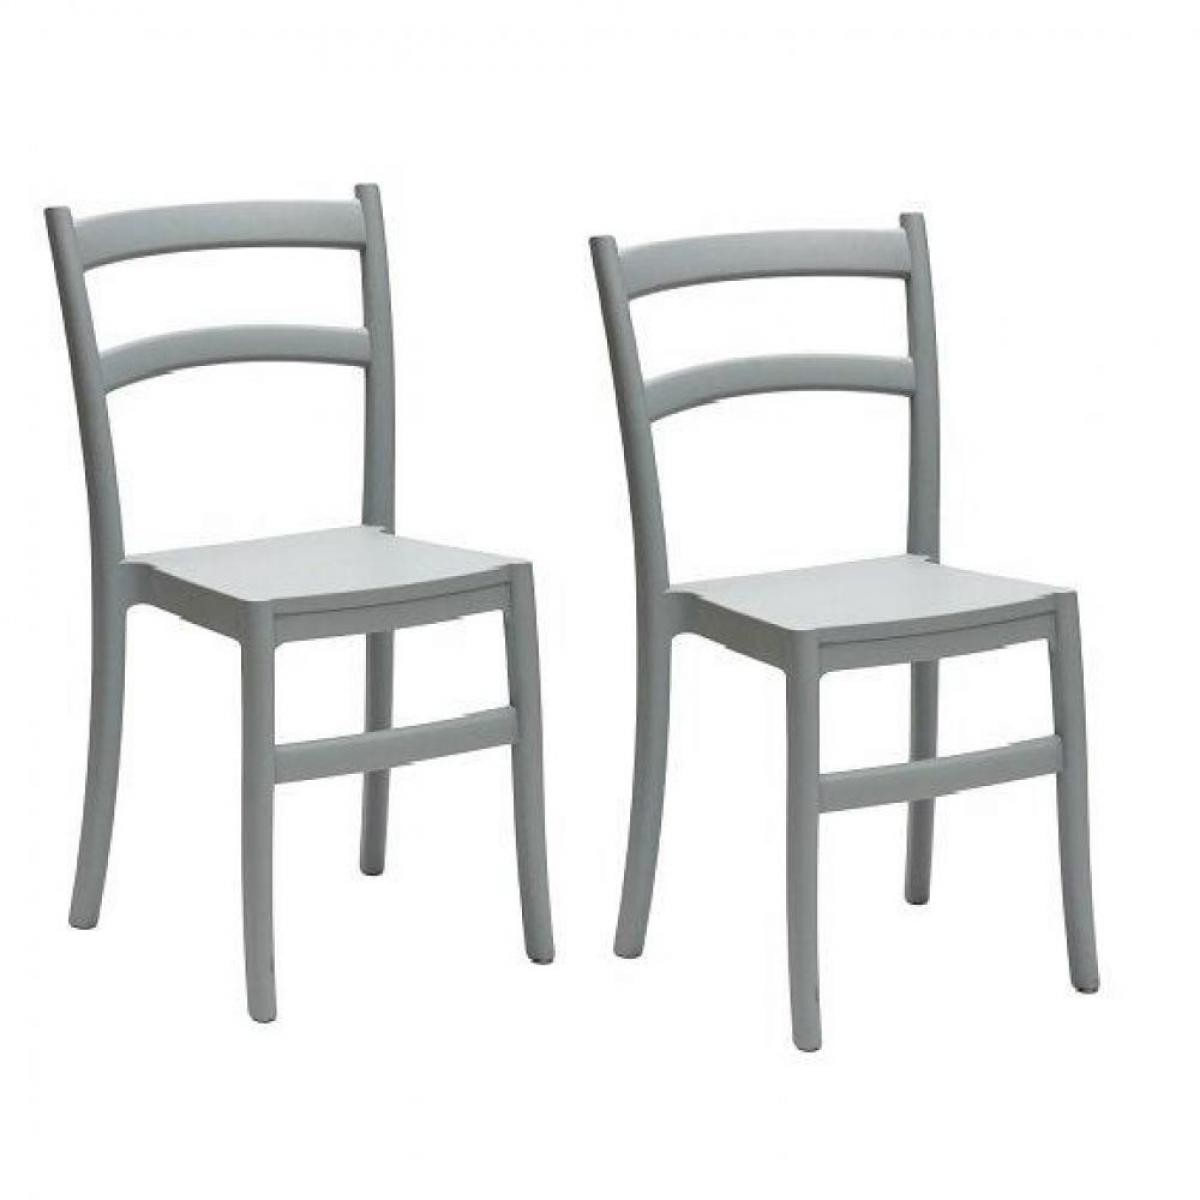 Inside 75 - Lot de 2 chaises VENEZIA design polypropylène gris - Chaises